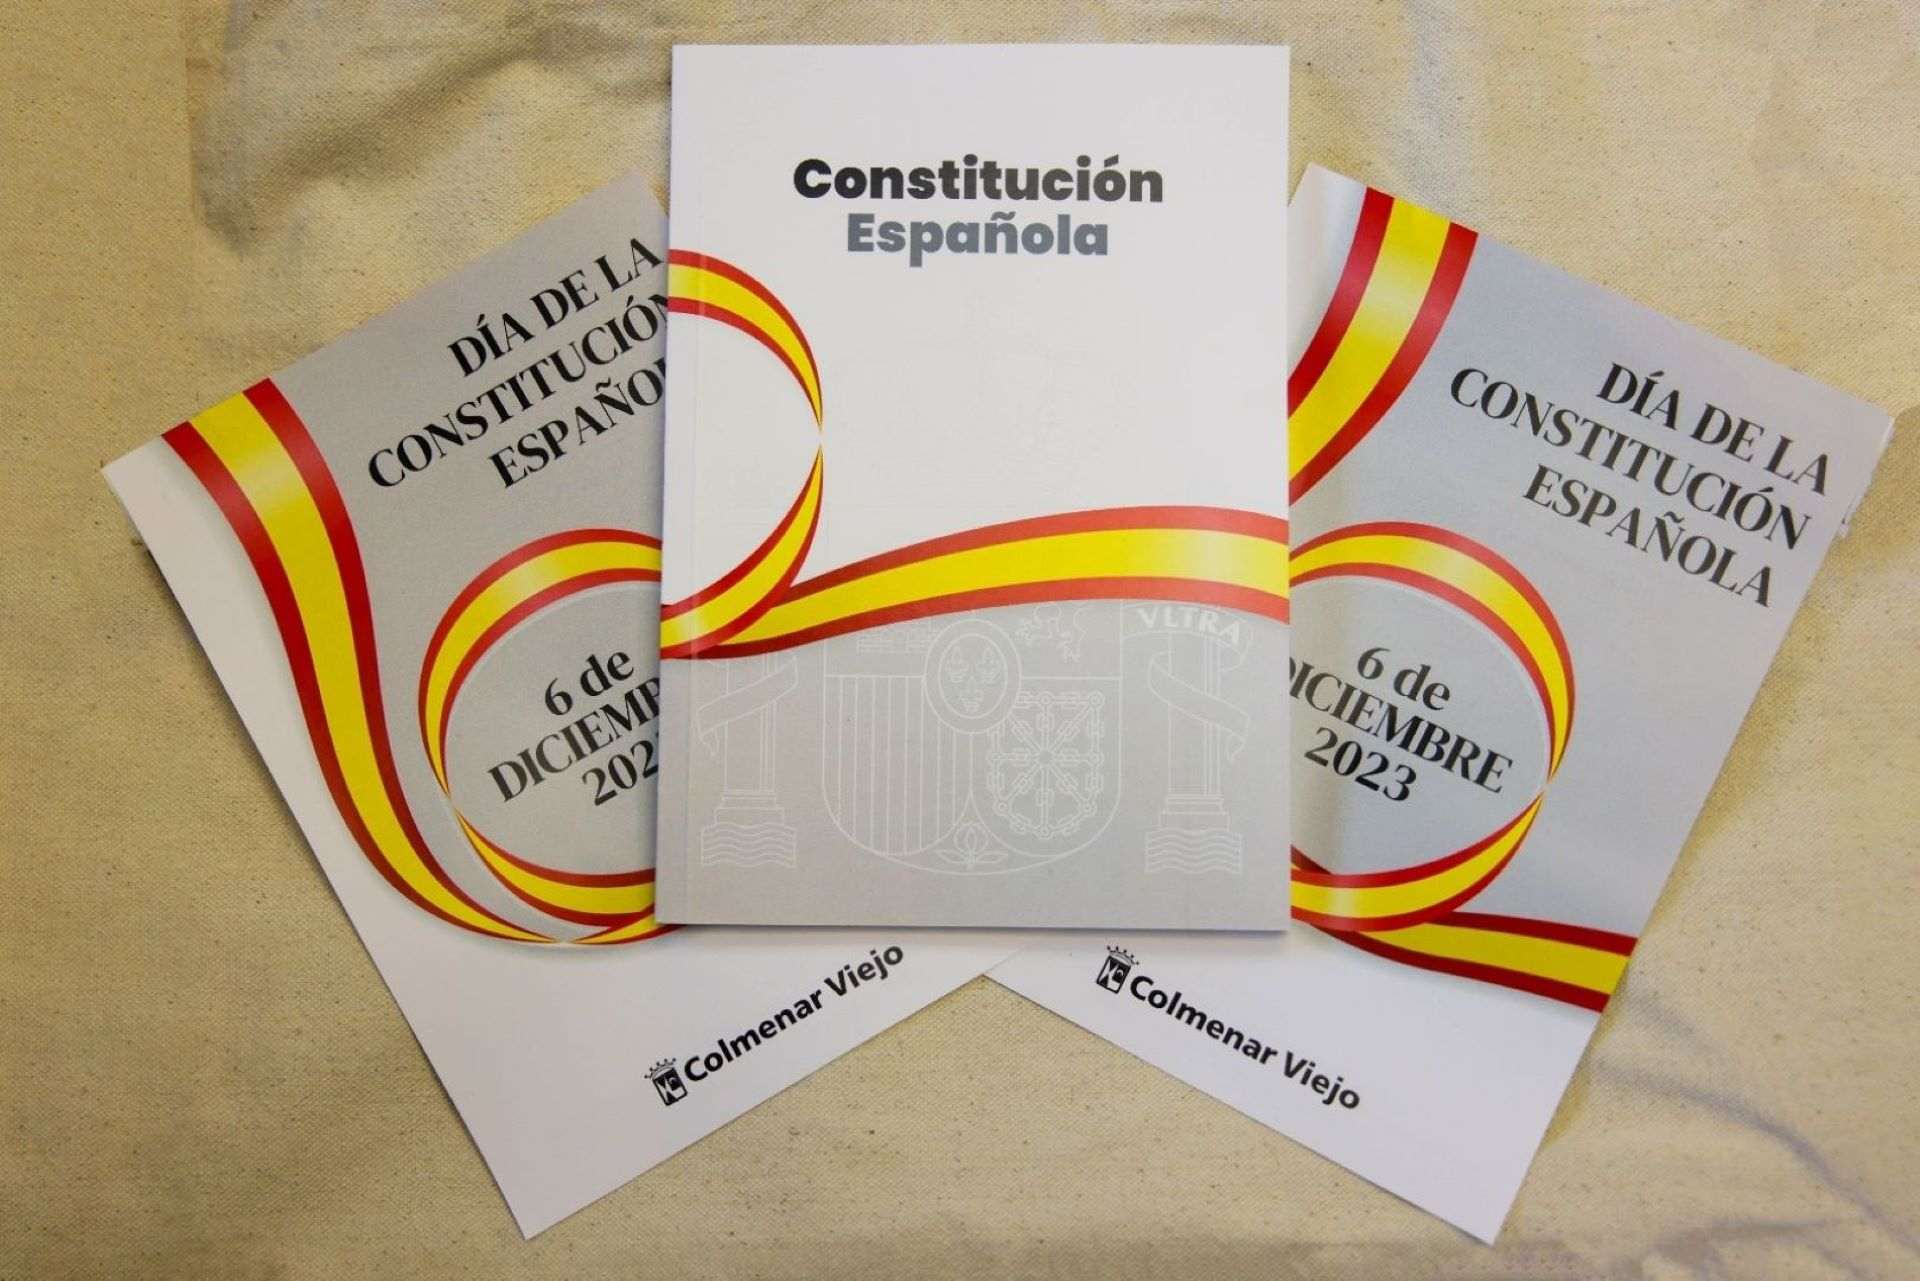 ¿Te sientes representado por la Constitución española?